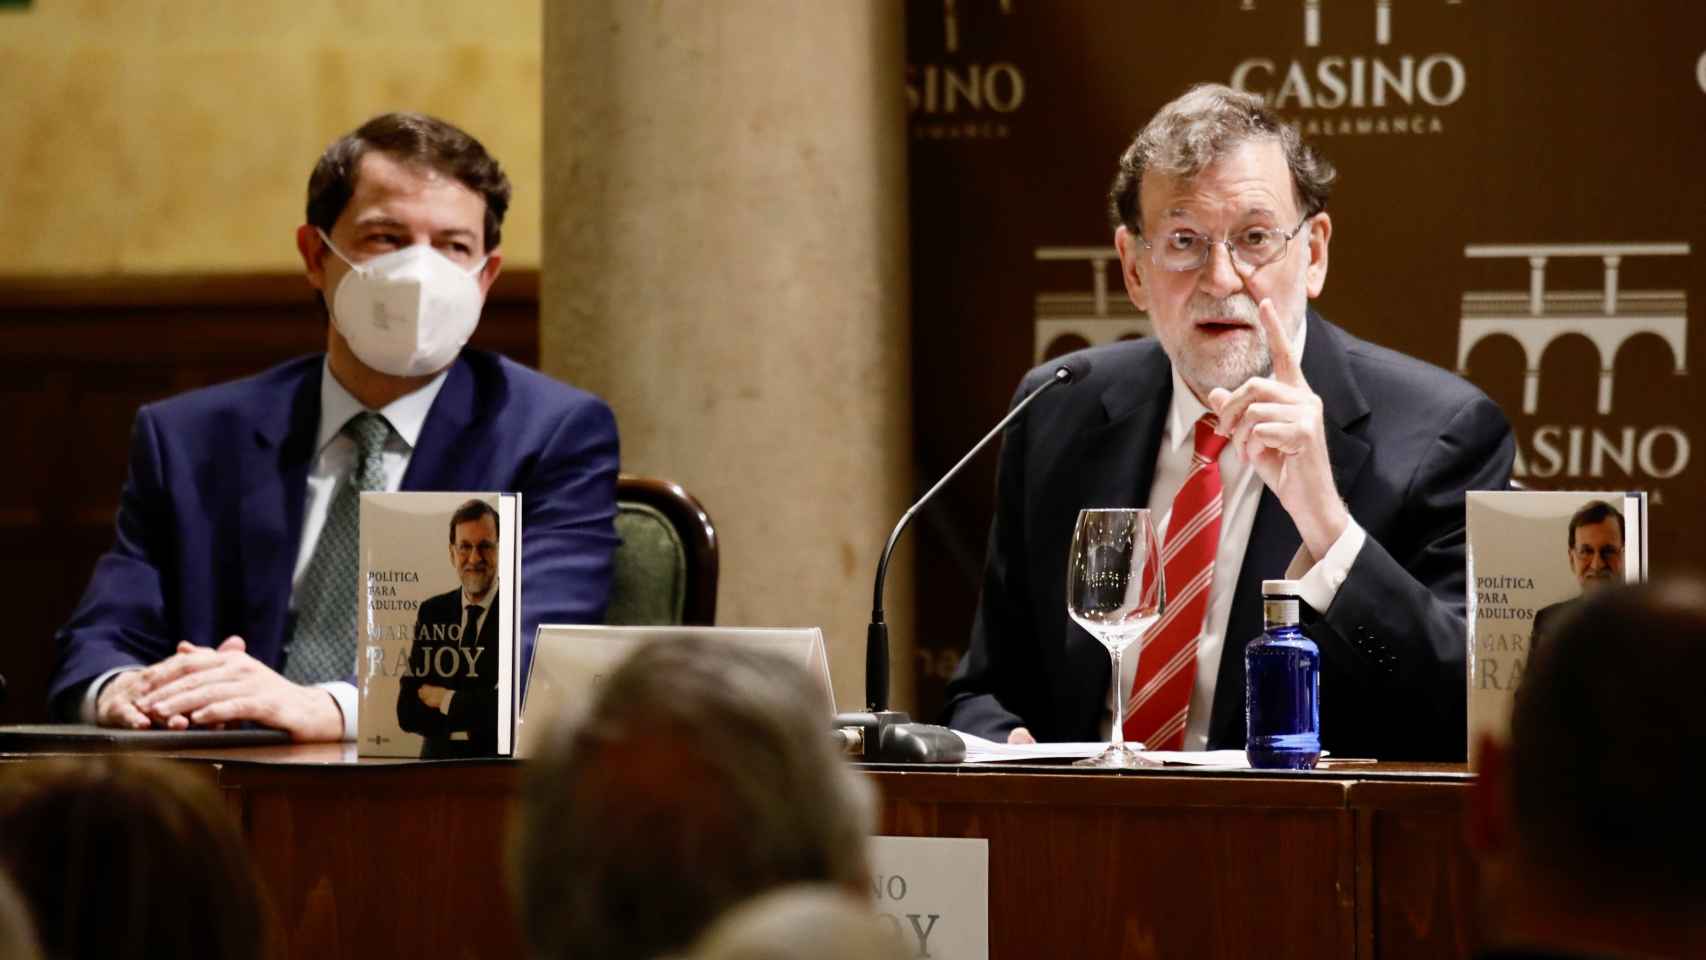 Rajoy durante la presentación de su libro junto a Mañueco